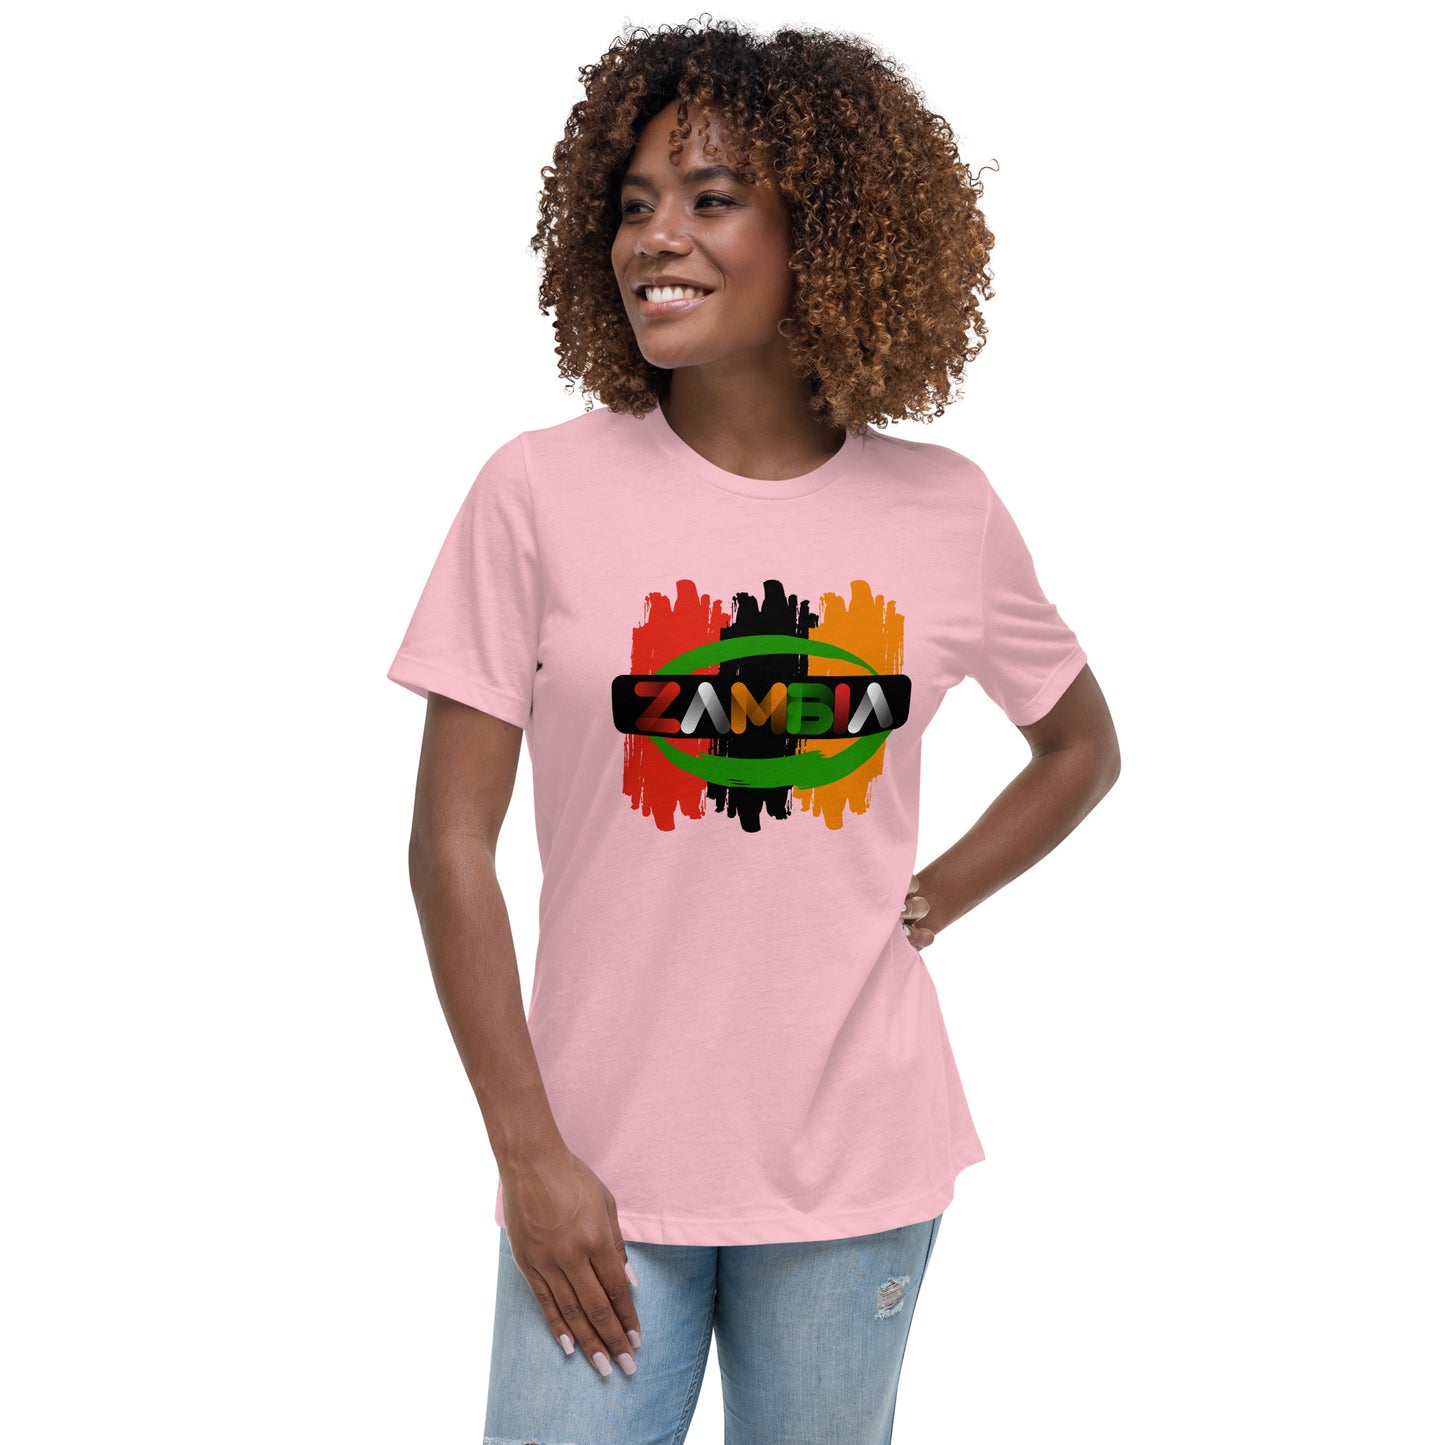 Women's Relaxed Zambia T-Shirt